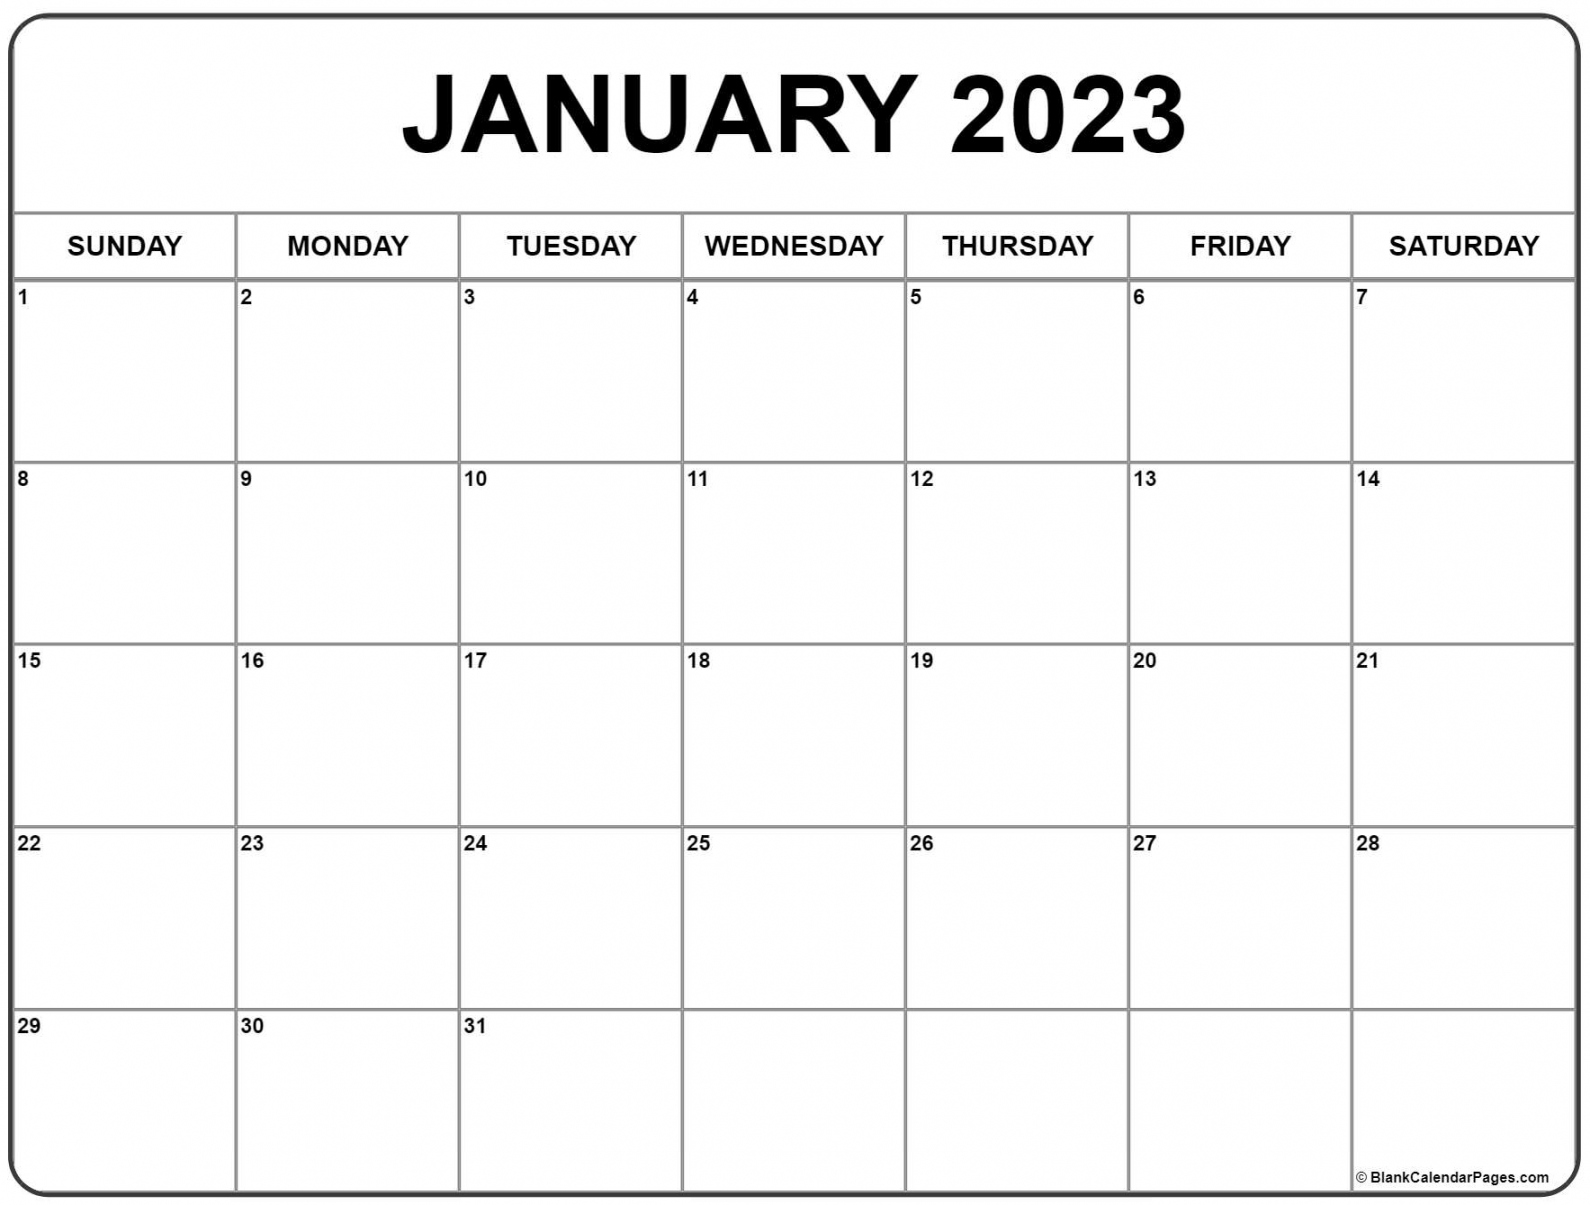 Free Printable Calendar January 2023 - Printable - January  calendar  free printable calendar